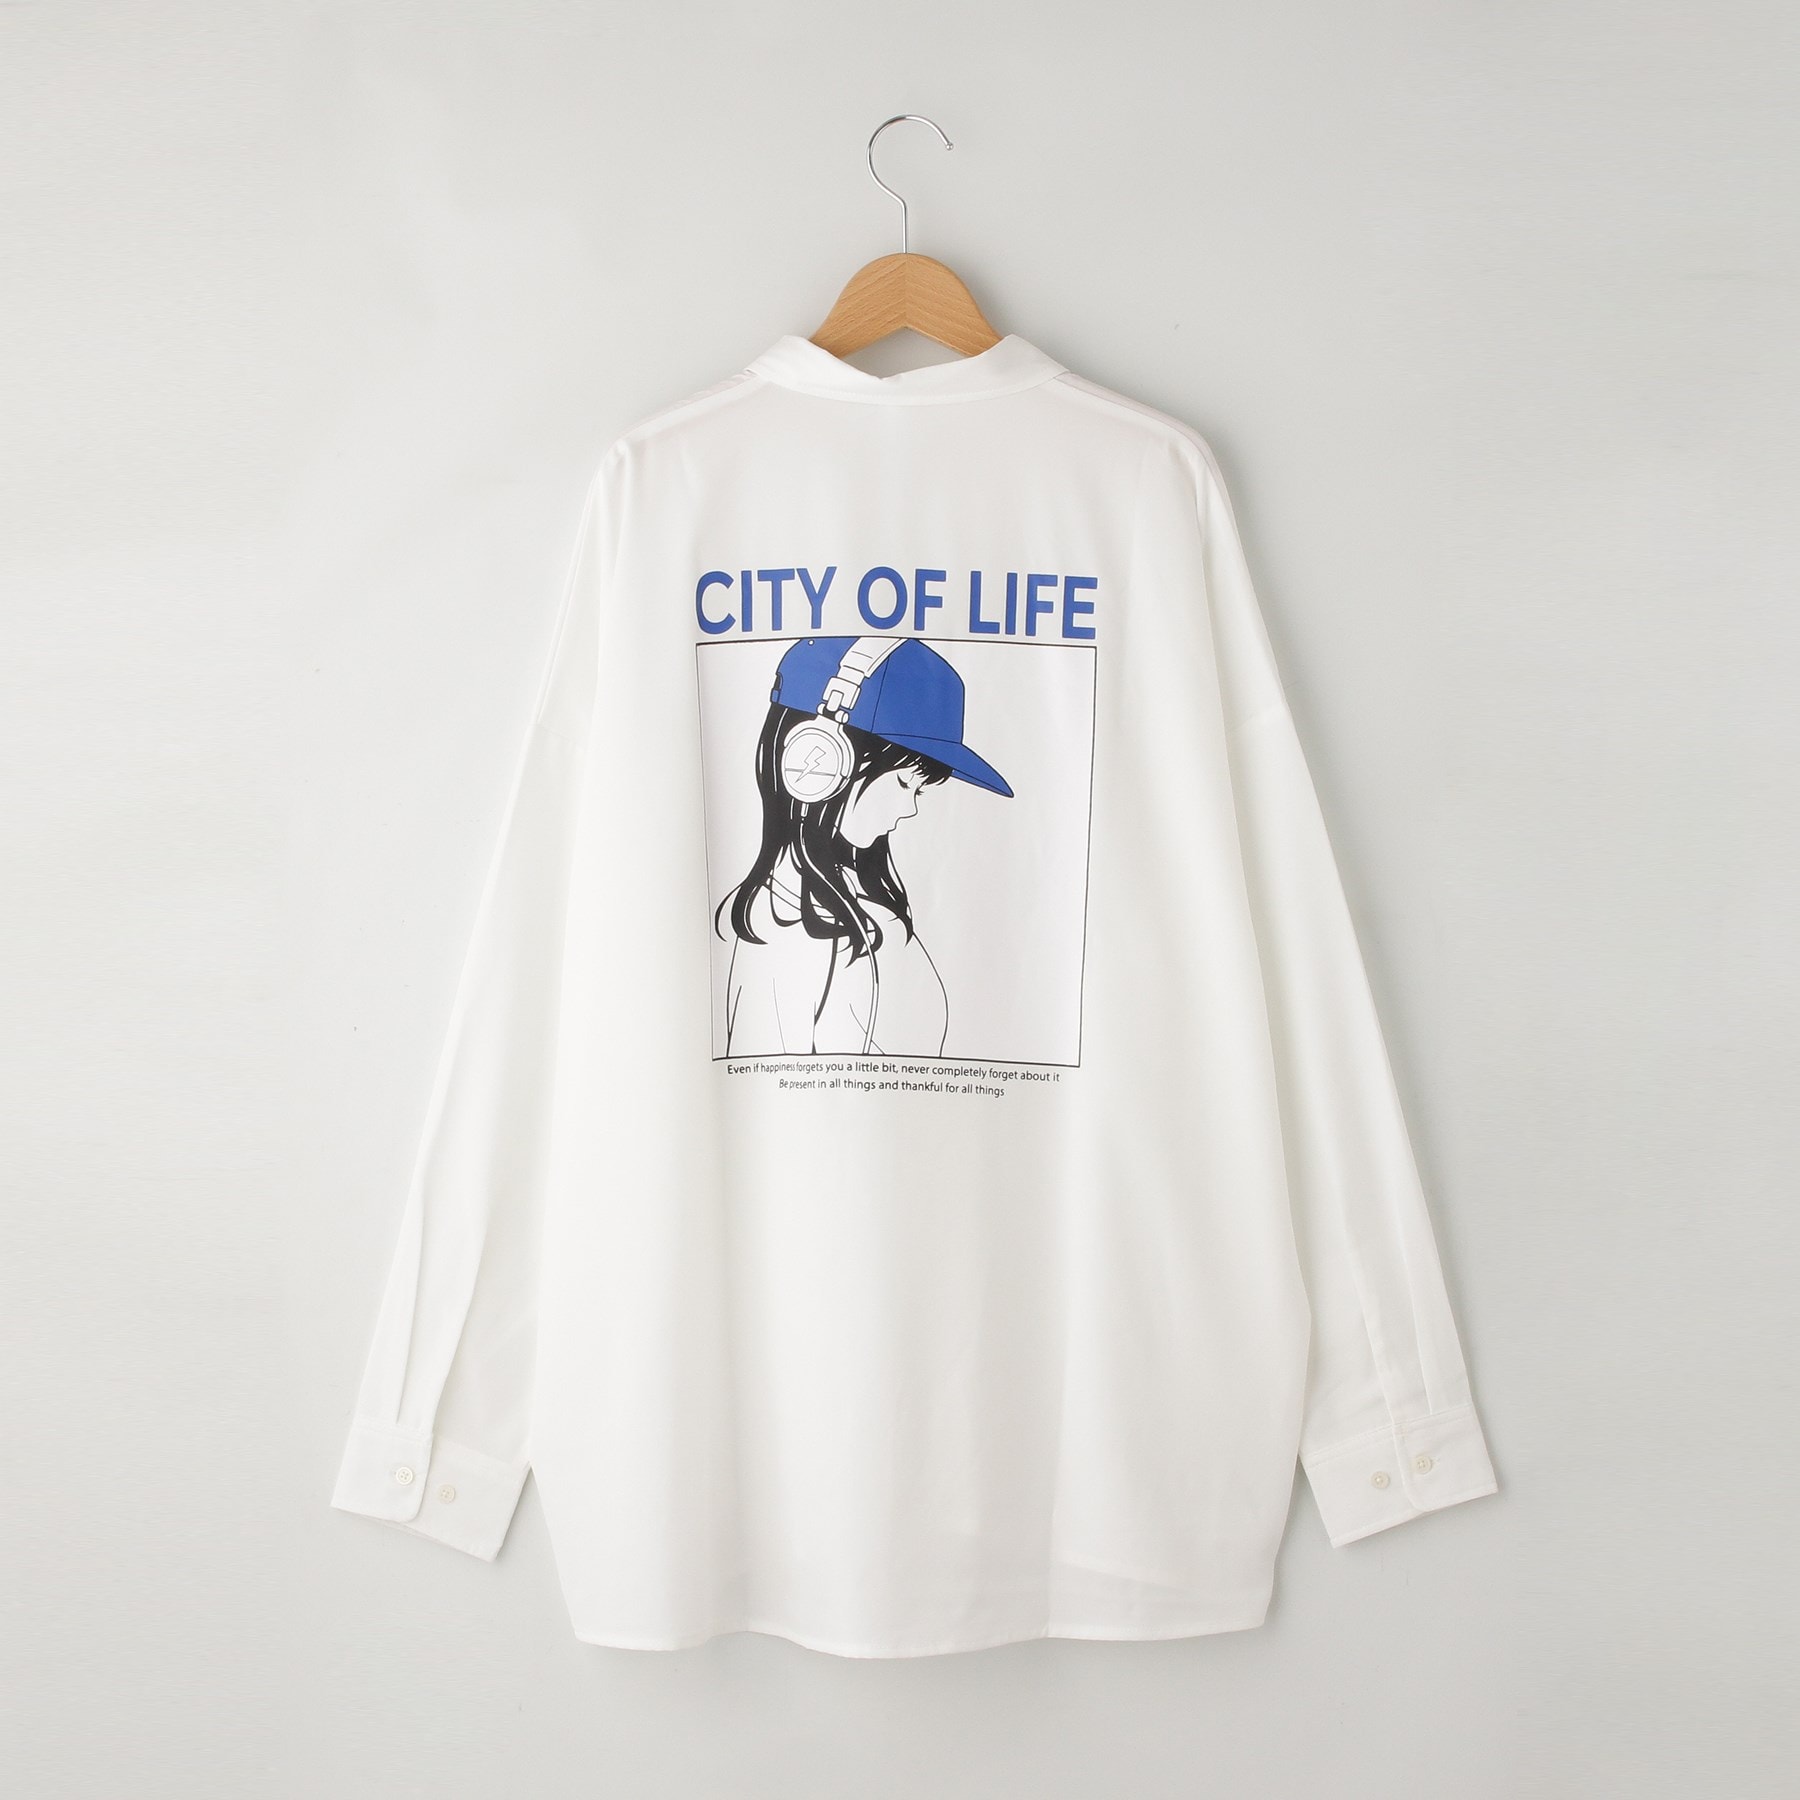 オフプライスストア(メンズ)(OFF PRICE STORE(Mens))のHALHAM バックプリントビックシャツ(CITY OF LIFE)4